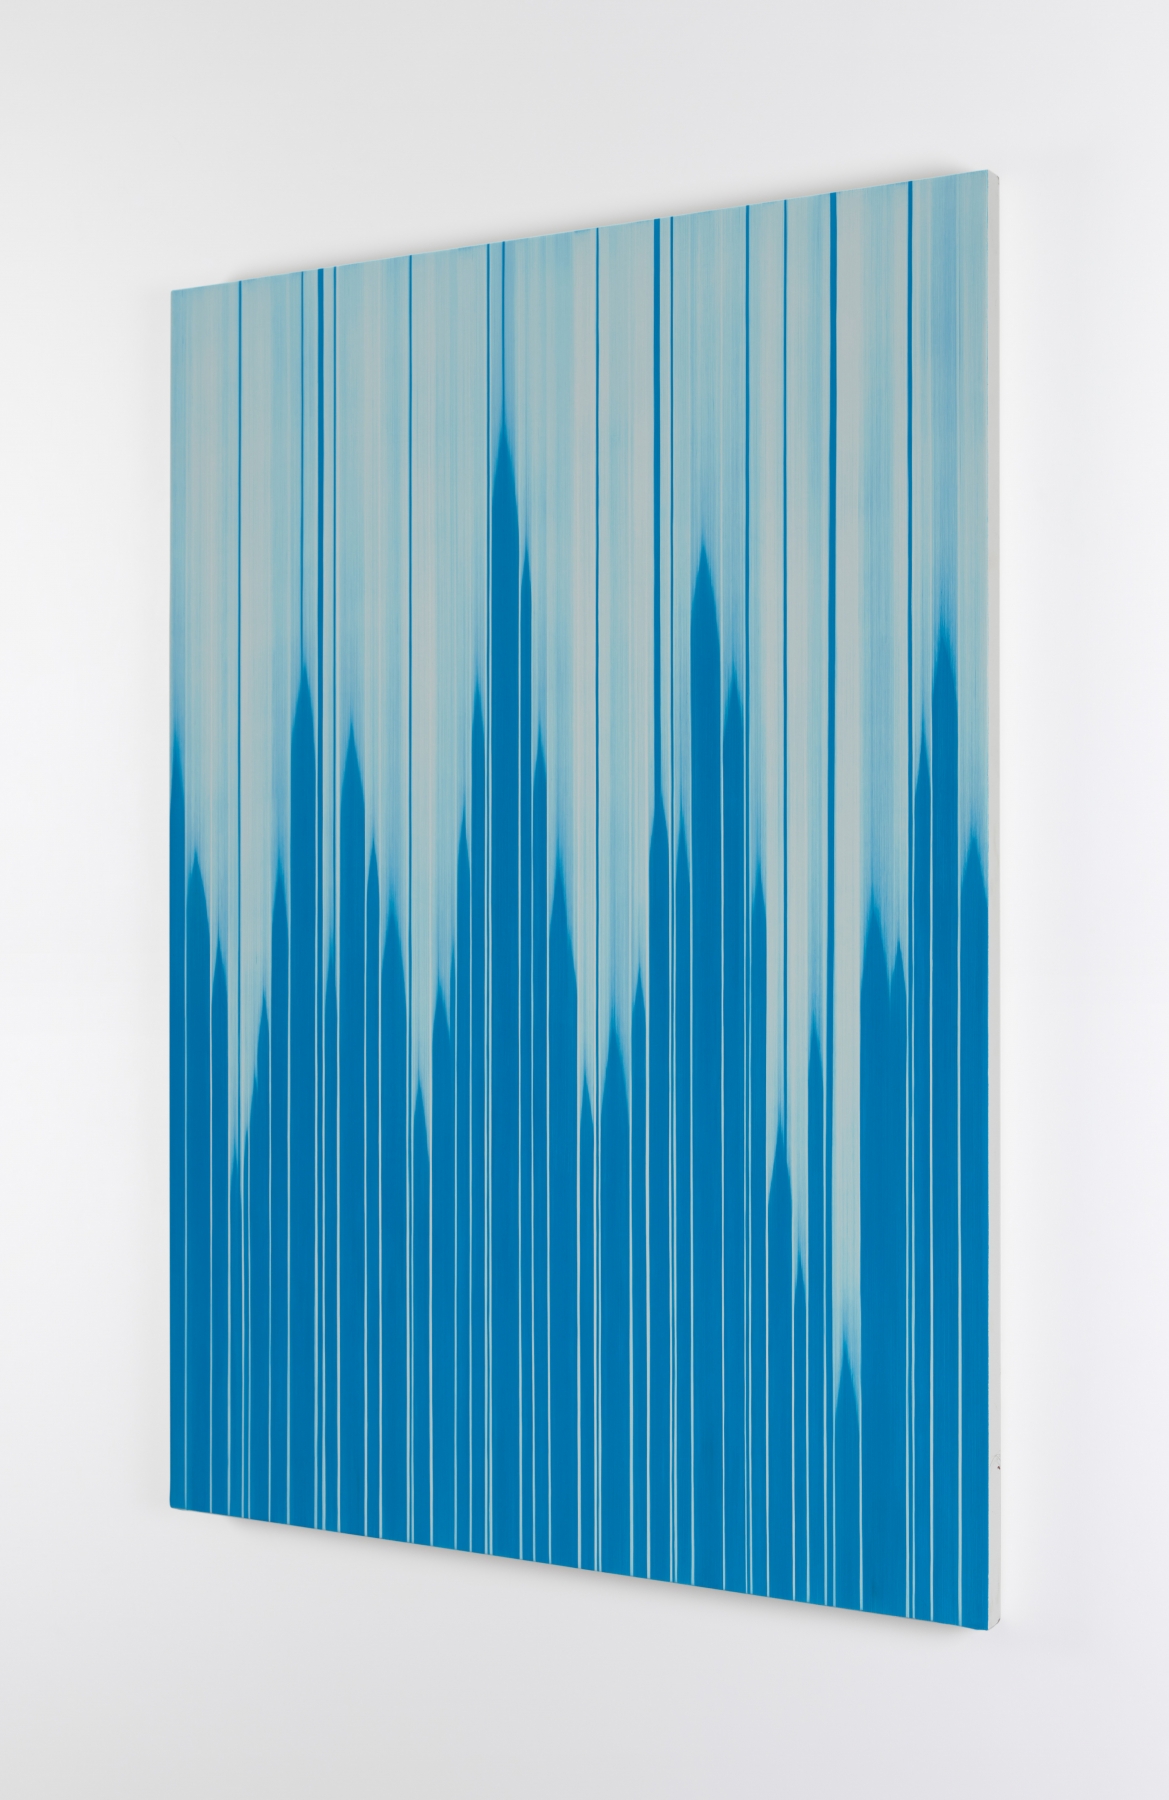 Mark Francis&nbsp;
ReEcho, 2021
oil on canvas
214 x 153 cm / 84.3 x 60.2 in